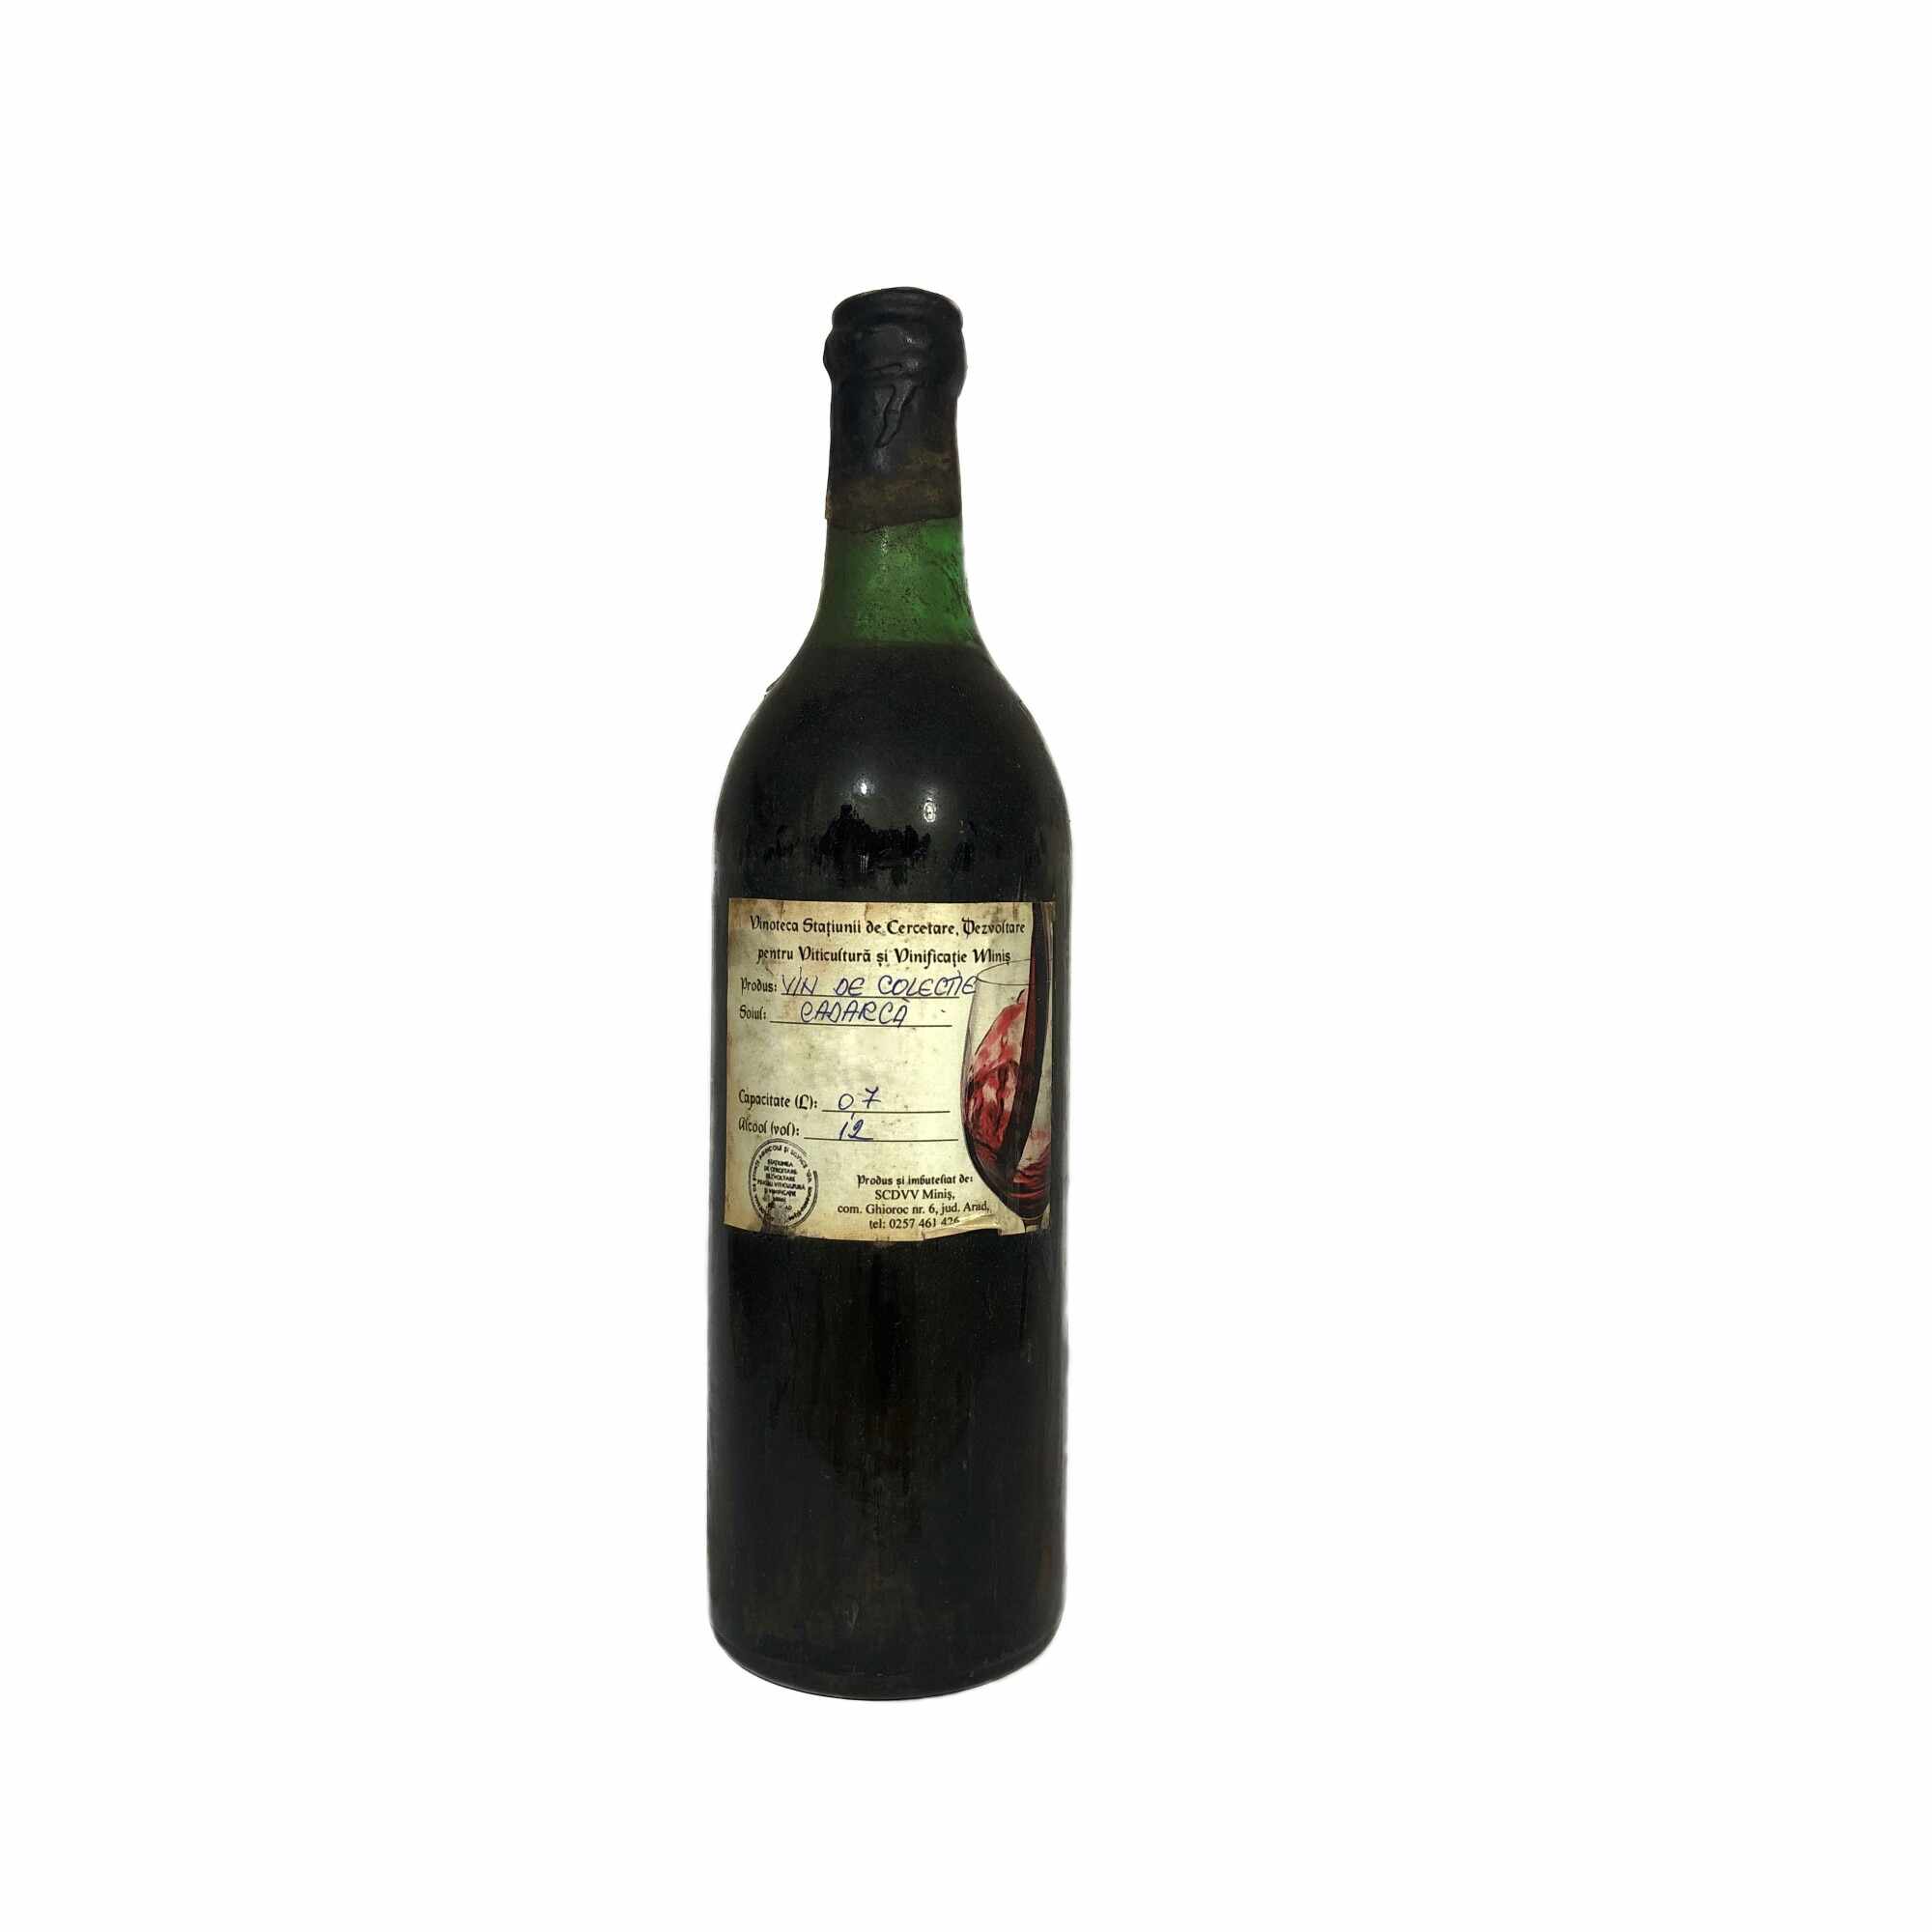 Vin rosu de colectie Cadarca - Anul 1972 in cutie de lemn, 700 ml